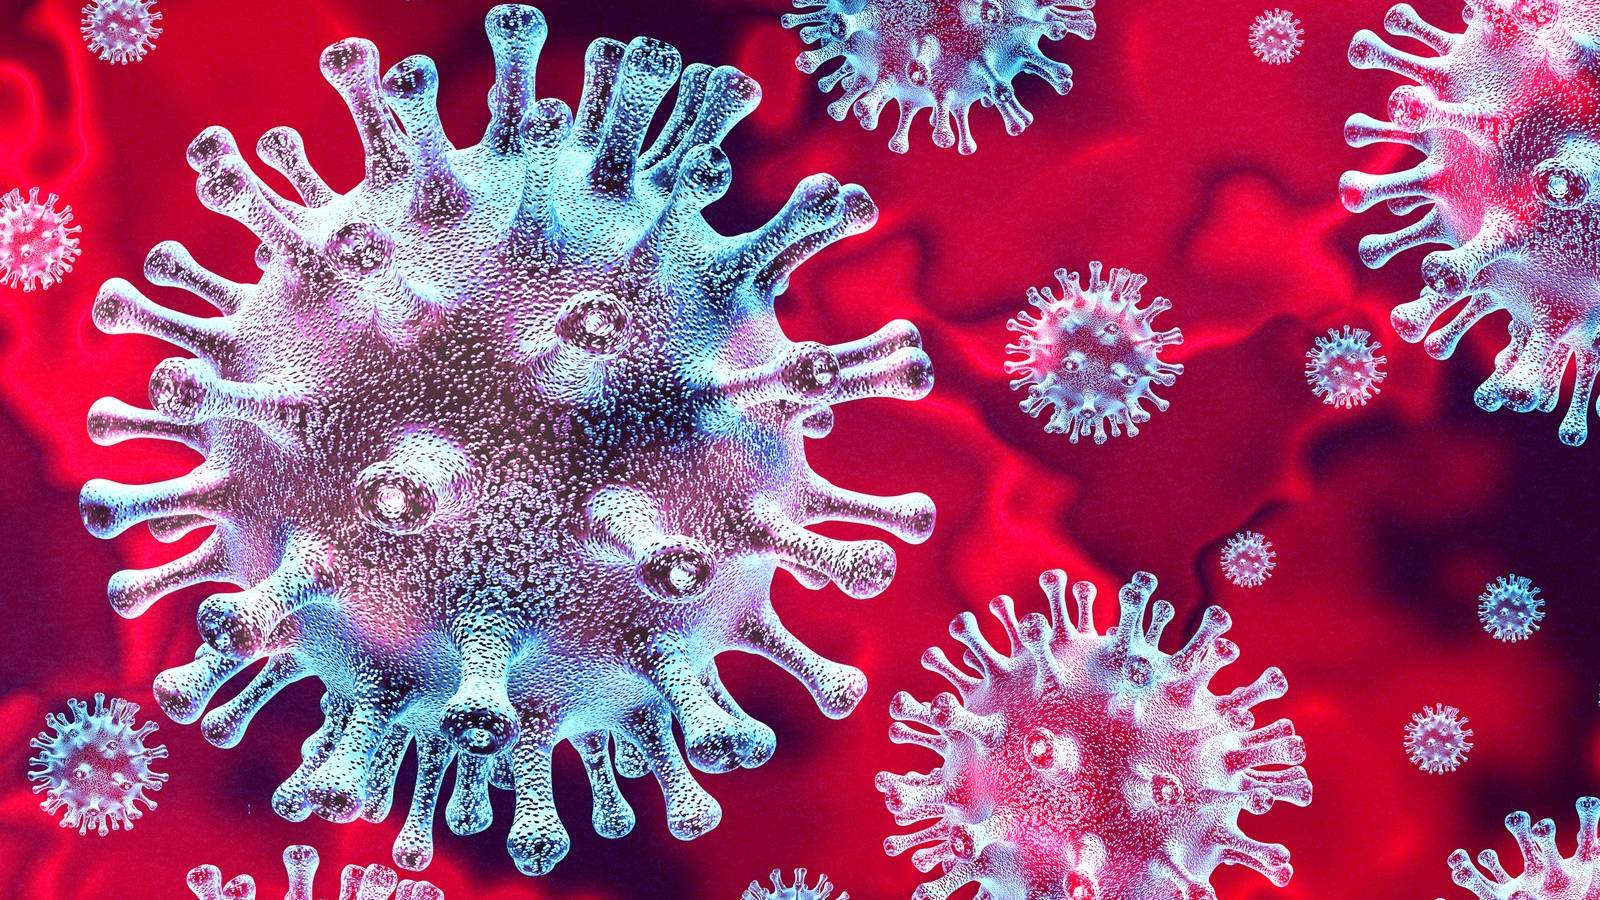 Roemeense gevallen van coronavirus genezen op 17 juli